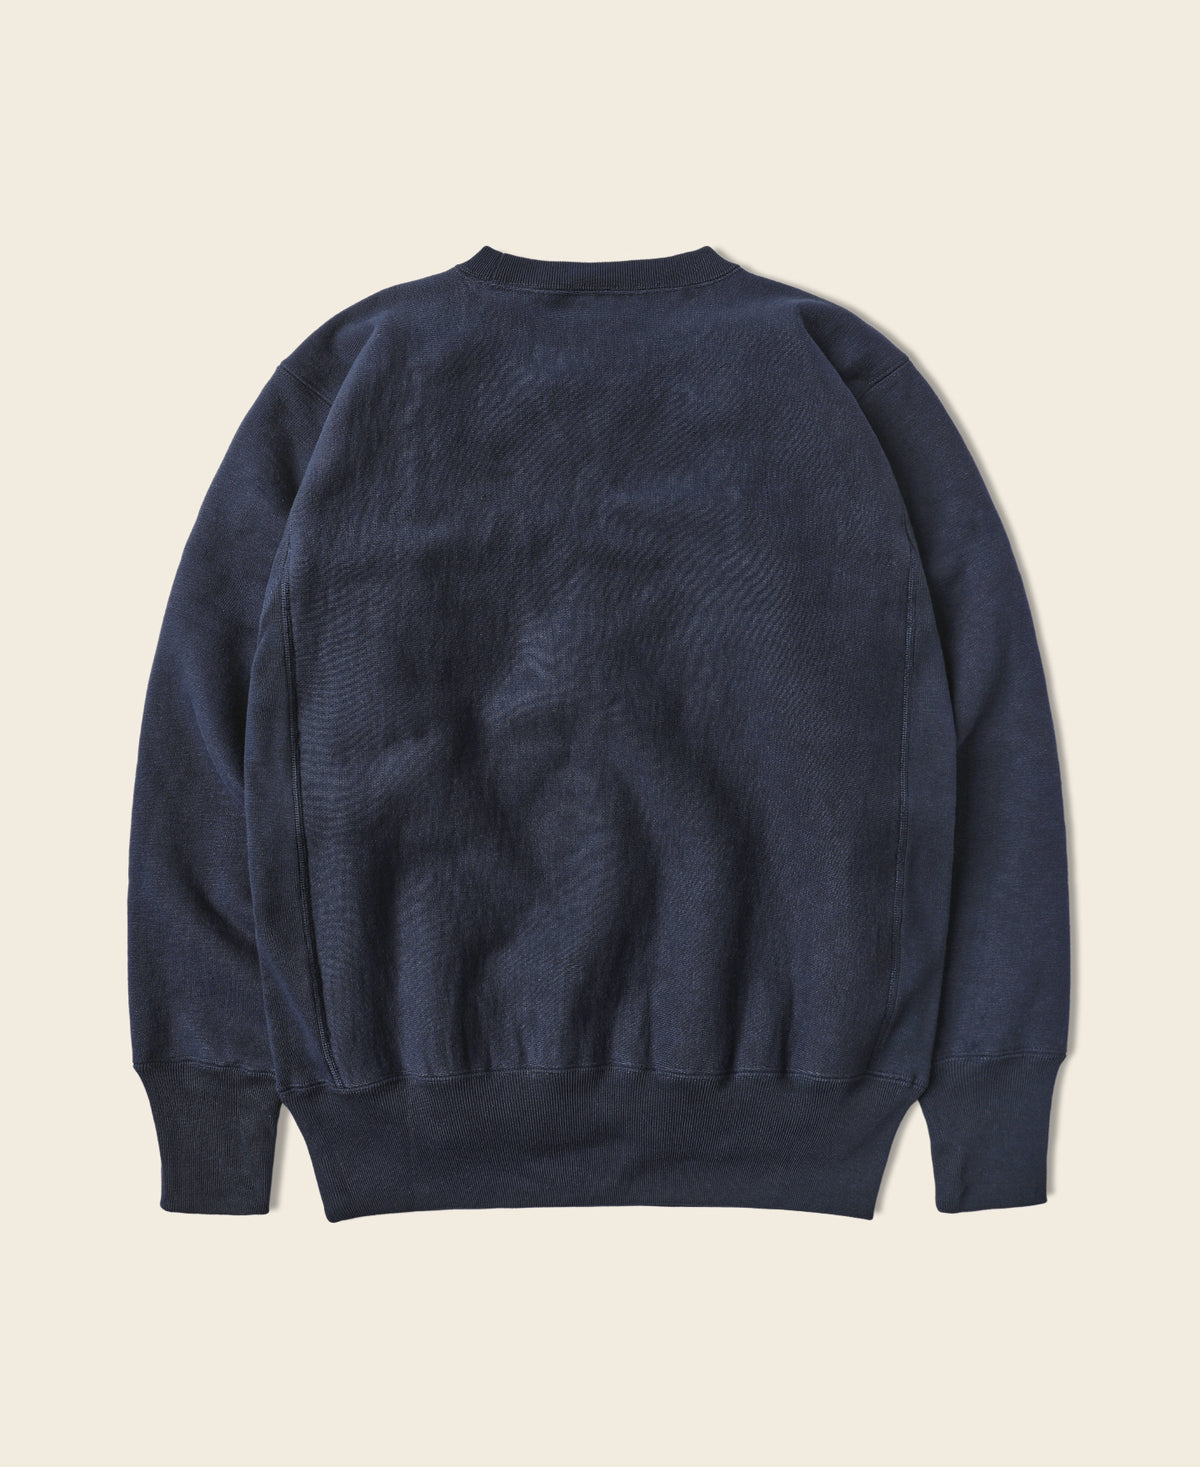 21 oz USCG Reverse Weave Sweatshirt